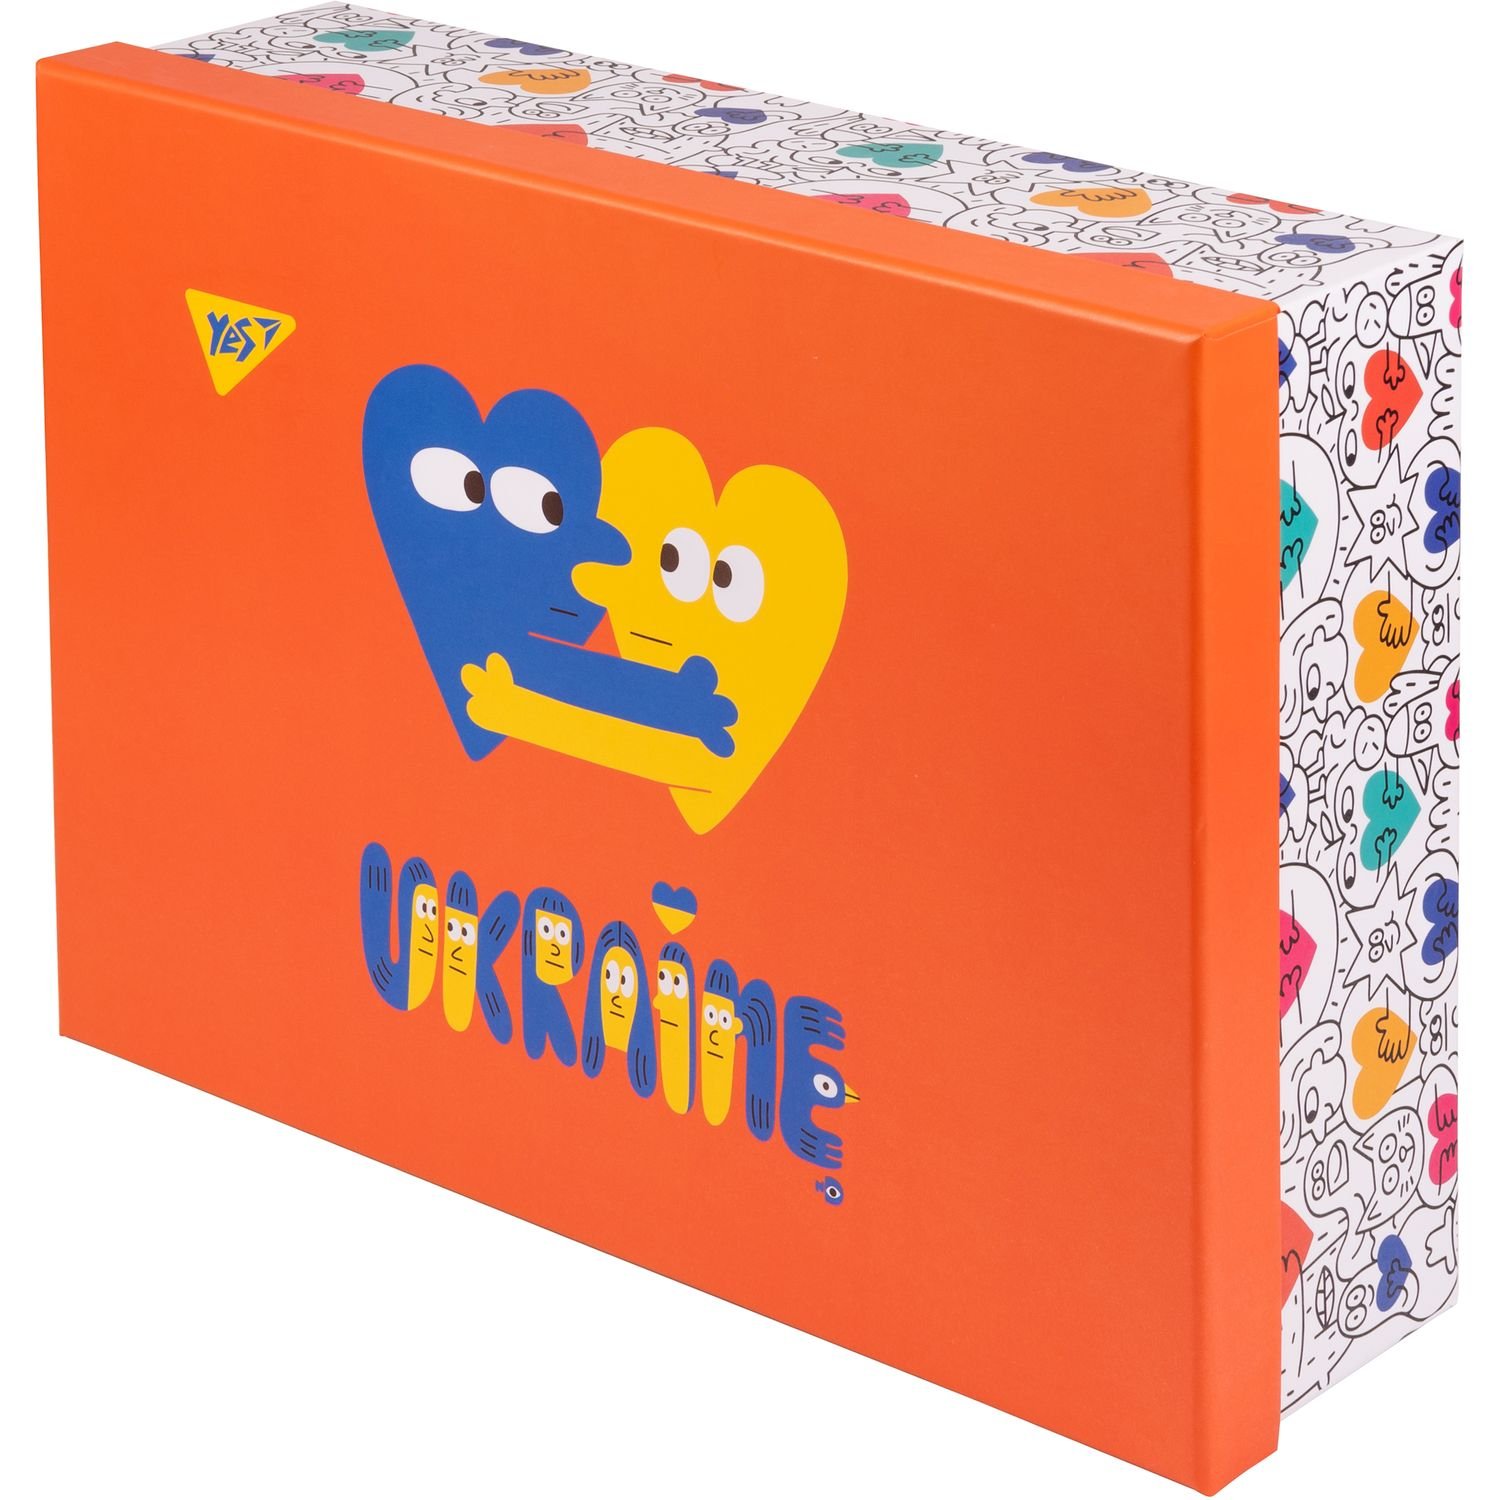 Настільний органайзер у наборі Yes Stand with Ukraine, картон, 4 предмети, різнобарвний (450130) - фото 6